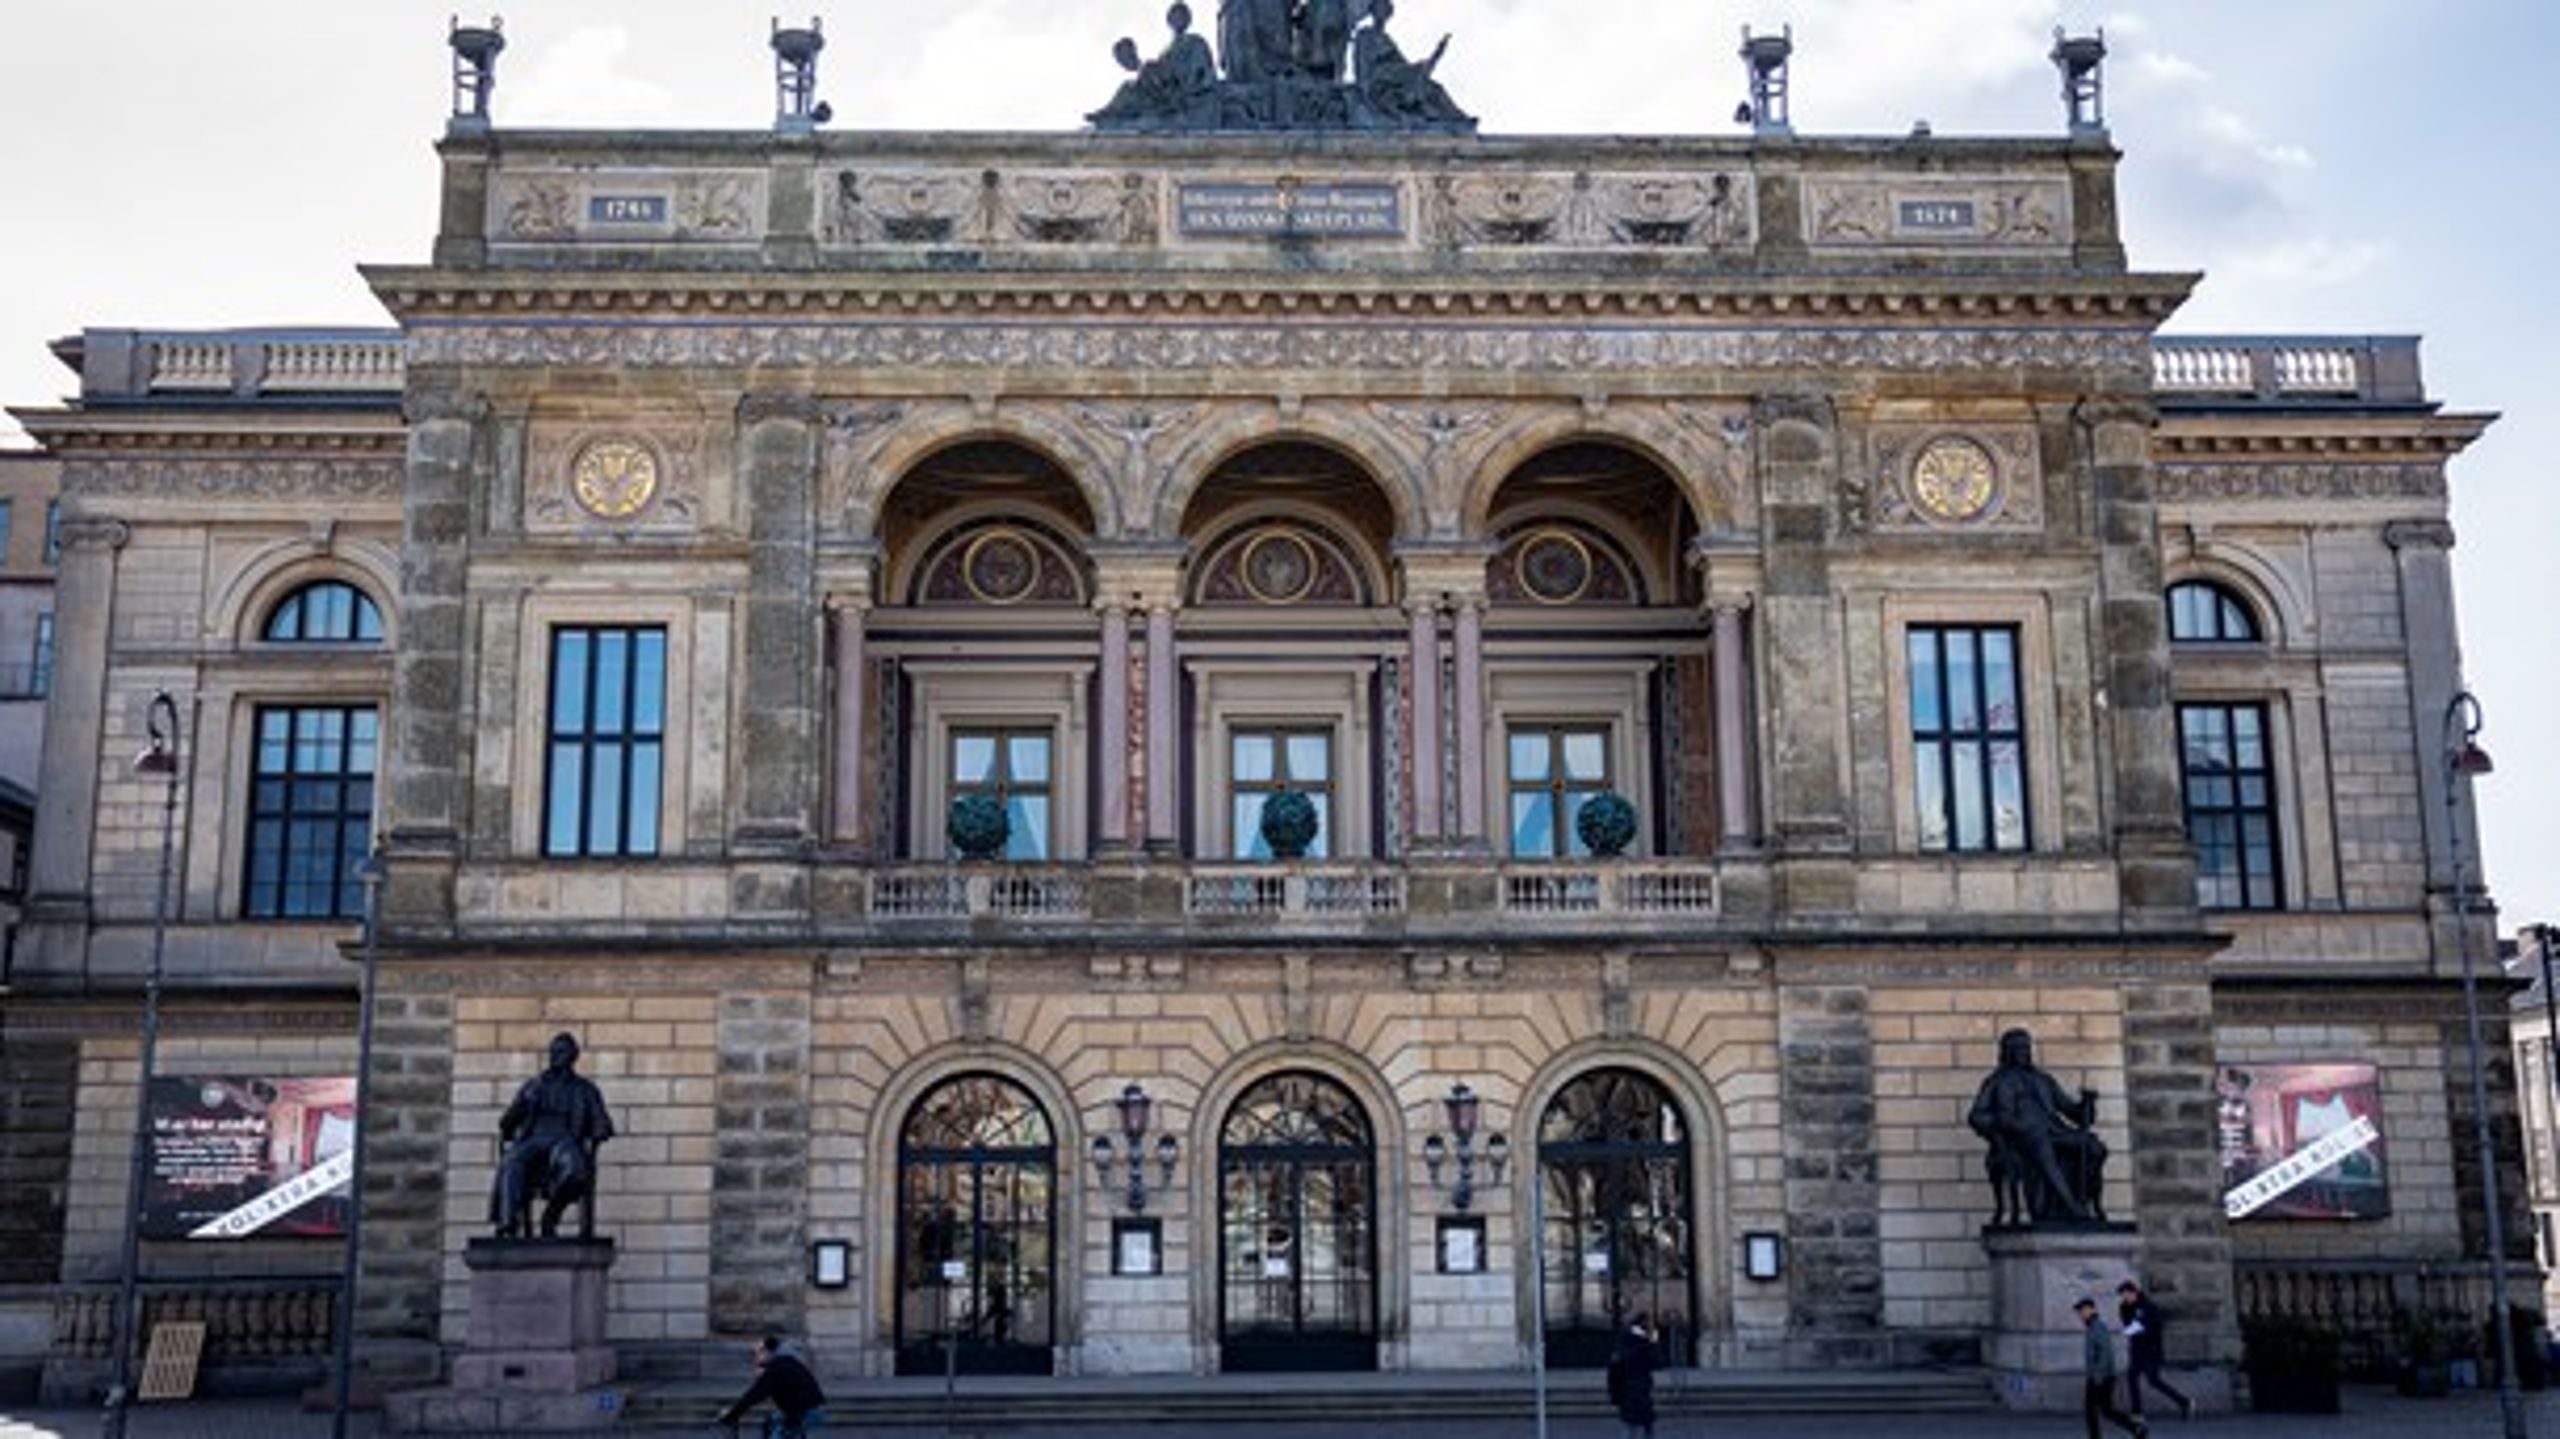 Det Kongelige Teater er enig i, at opsætning af musicals ikke skal ske&nbsp;på bekostning af de kommercielle producenter. Derfor accepterer teatret regler på området, skriver Per Christensen.